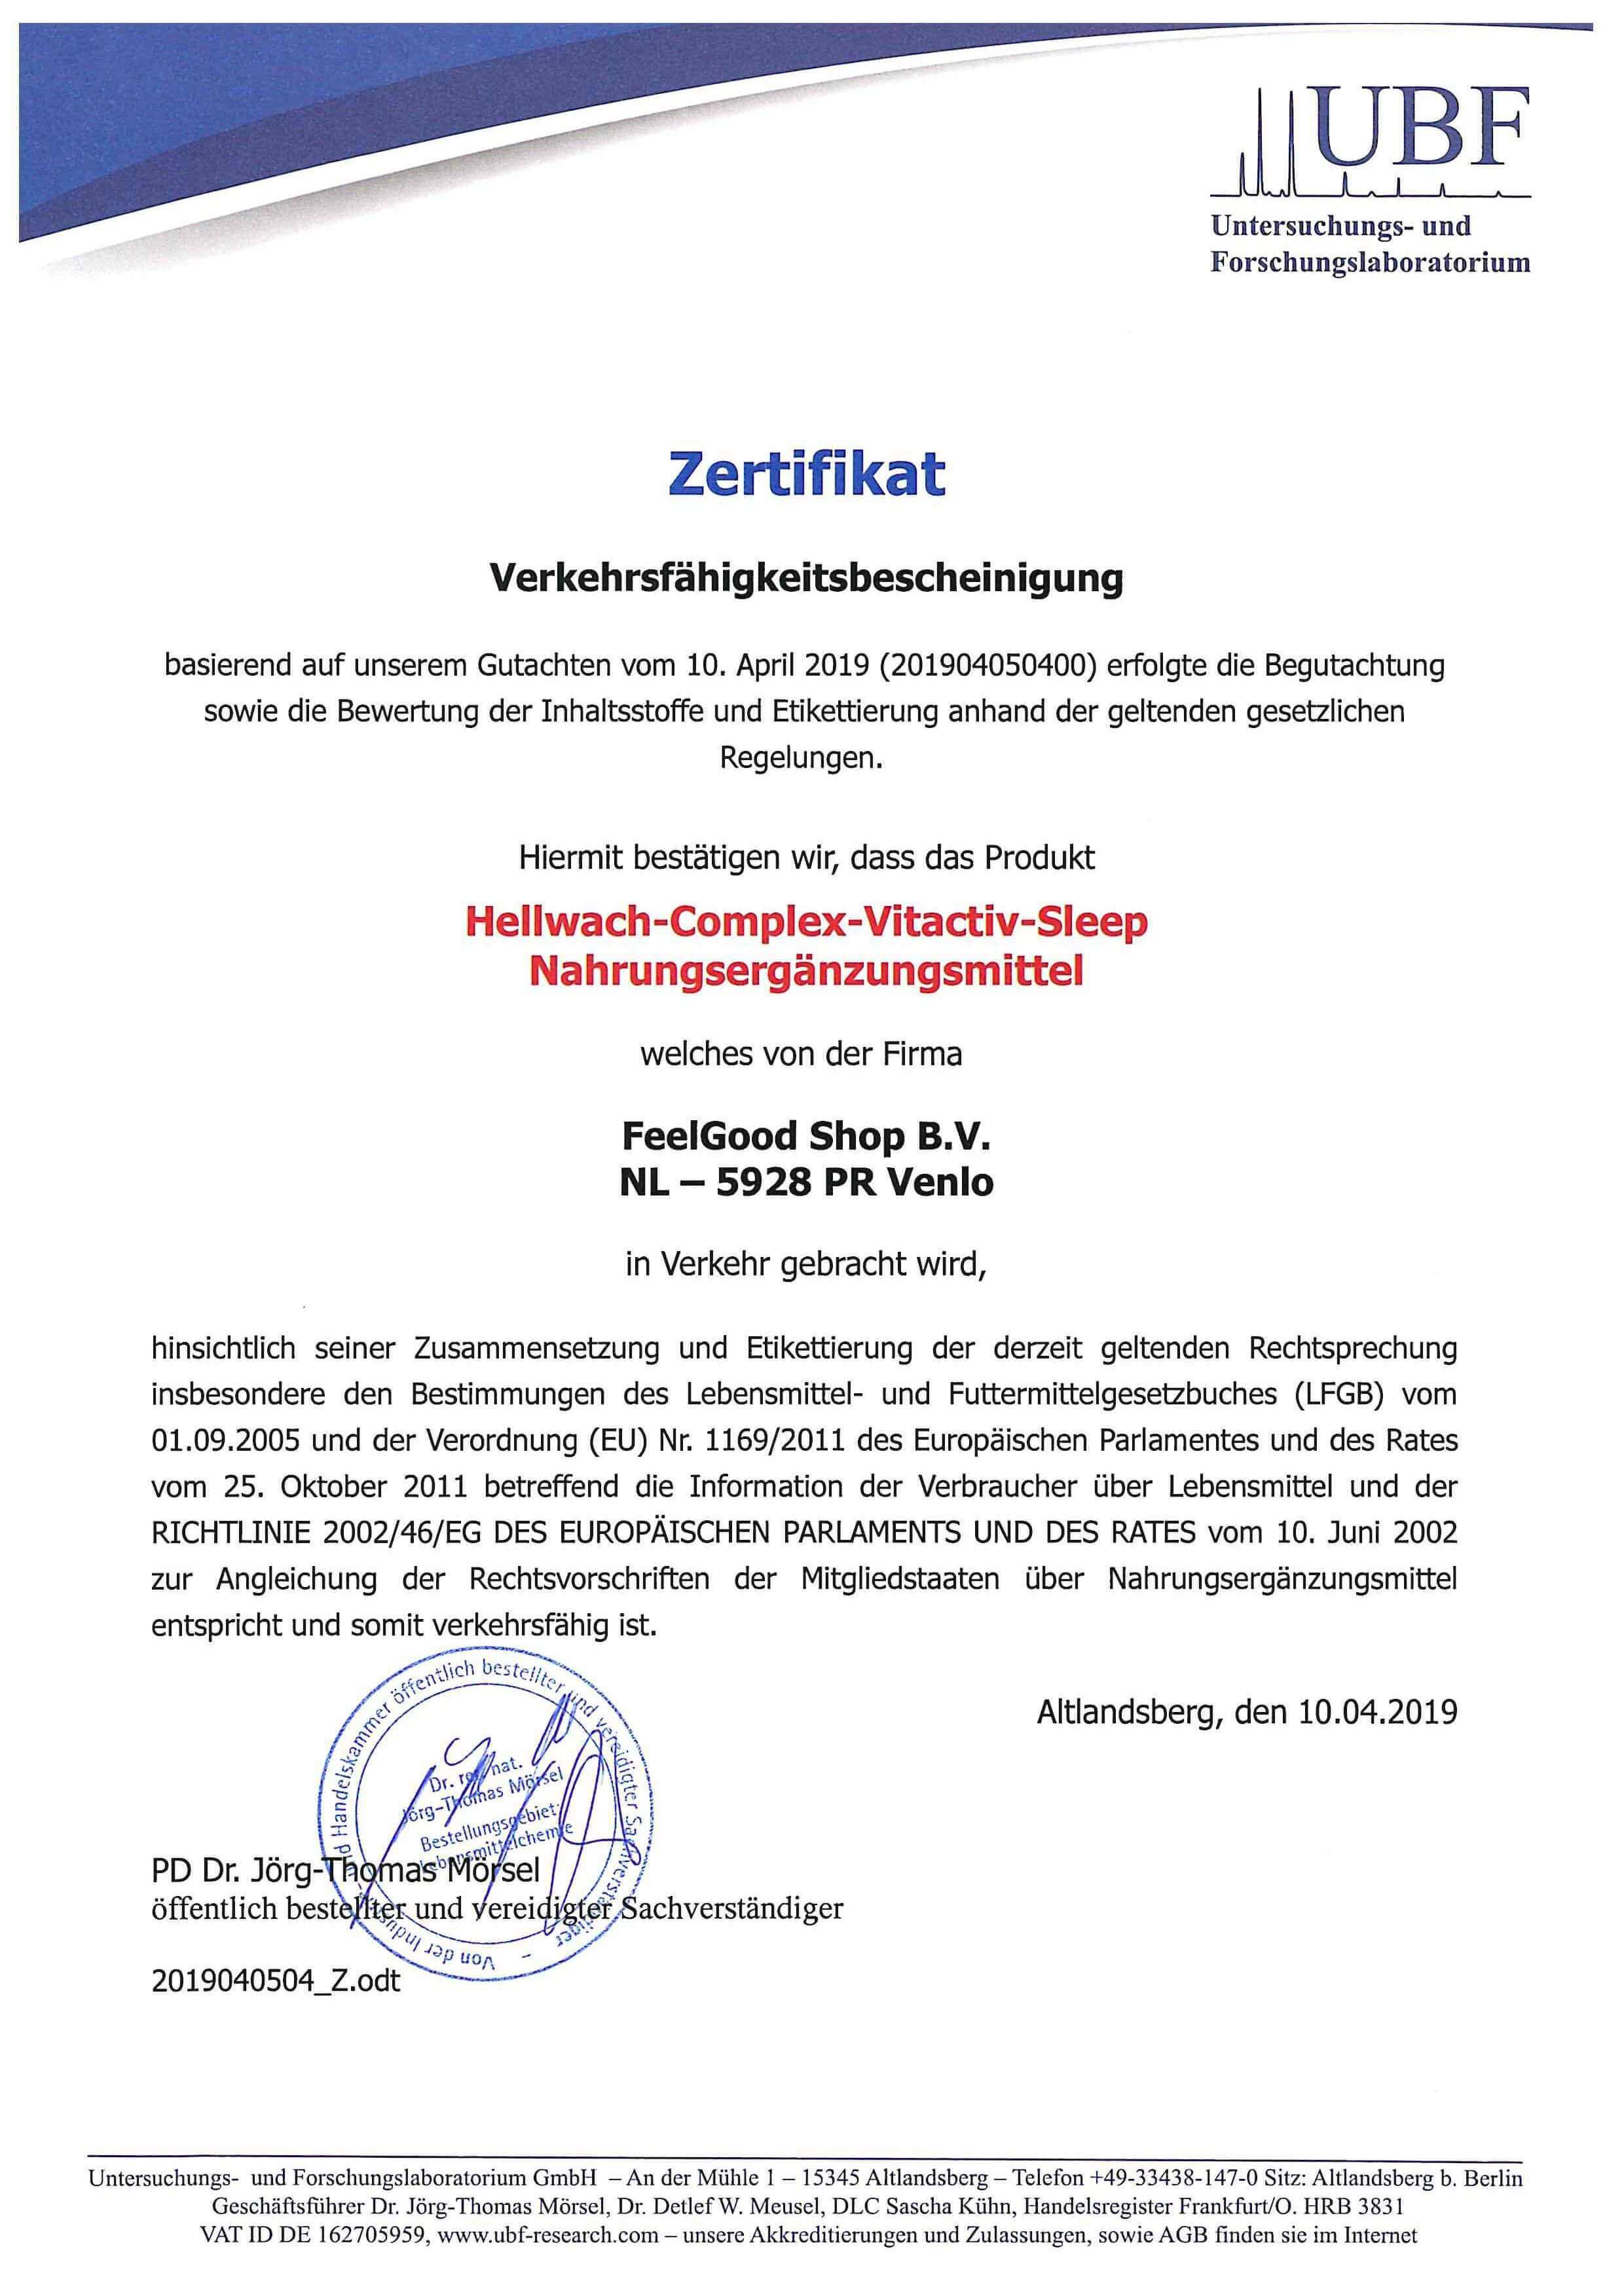 HellWACH Complex Energizer Zertifikat